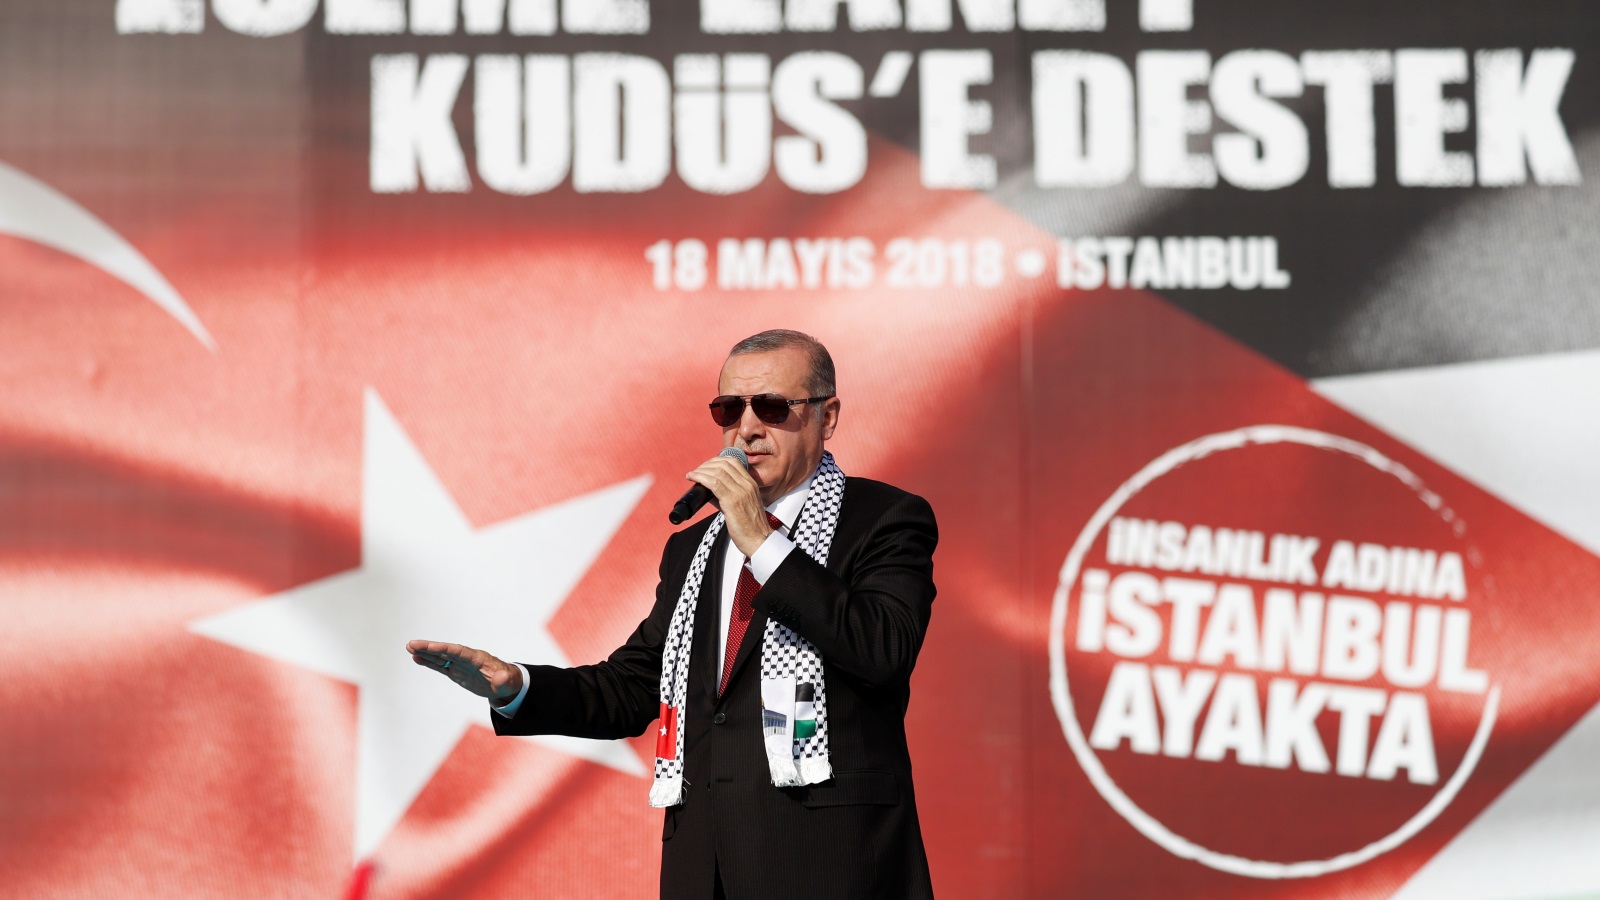 إنه أردوغان، الذي يعرف متى يسدد ضرباته، له وطأة راسخة في أغوار بورصة وفي مرمرة وأنقرة، وقونيا وأناضو